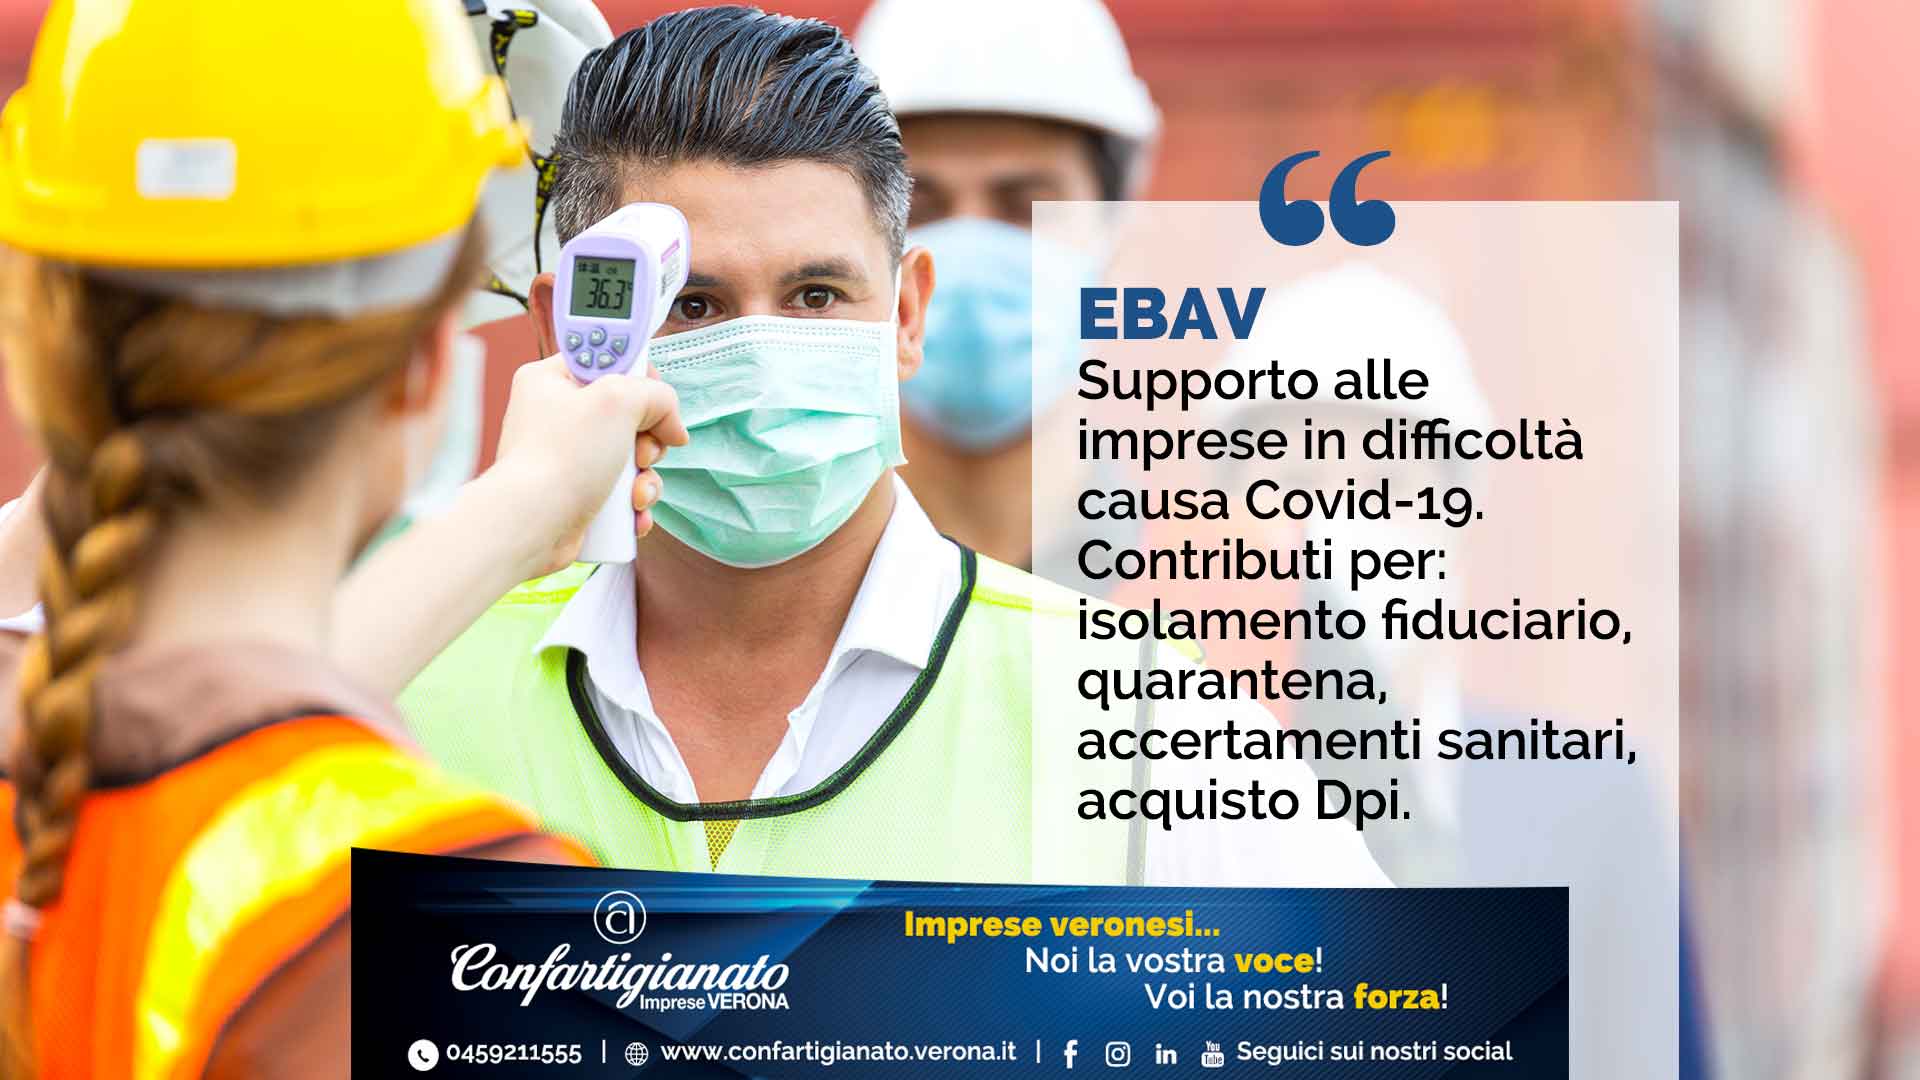 EBAV – Supporto a imprese in difficoltà causa Covid-19: contributi per isolamento fiduciario, quarantena, accertamenti sanitari, acquisto Dpi